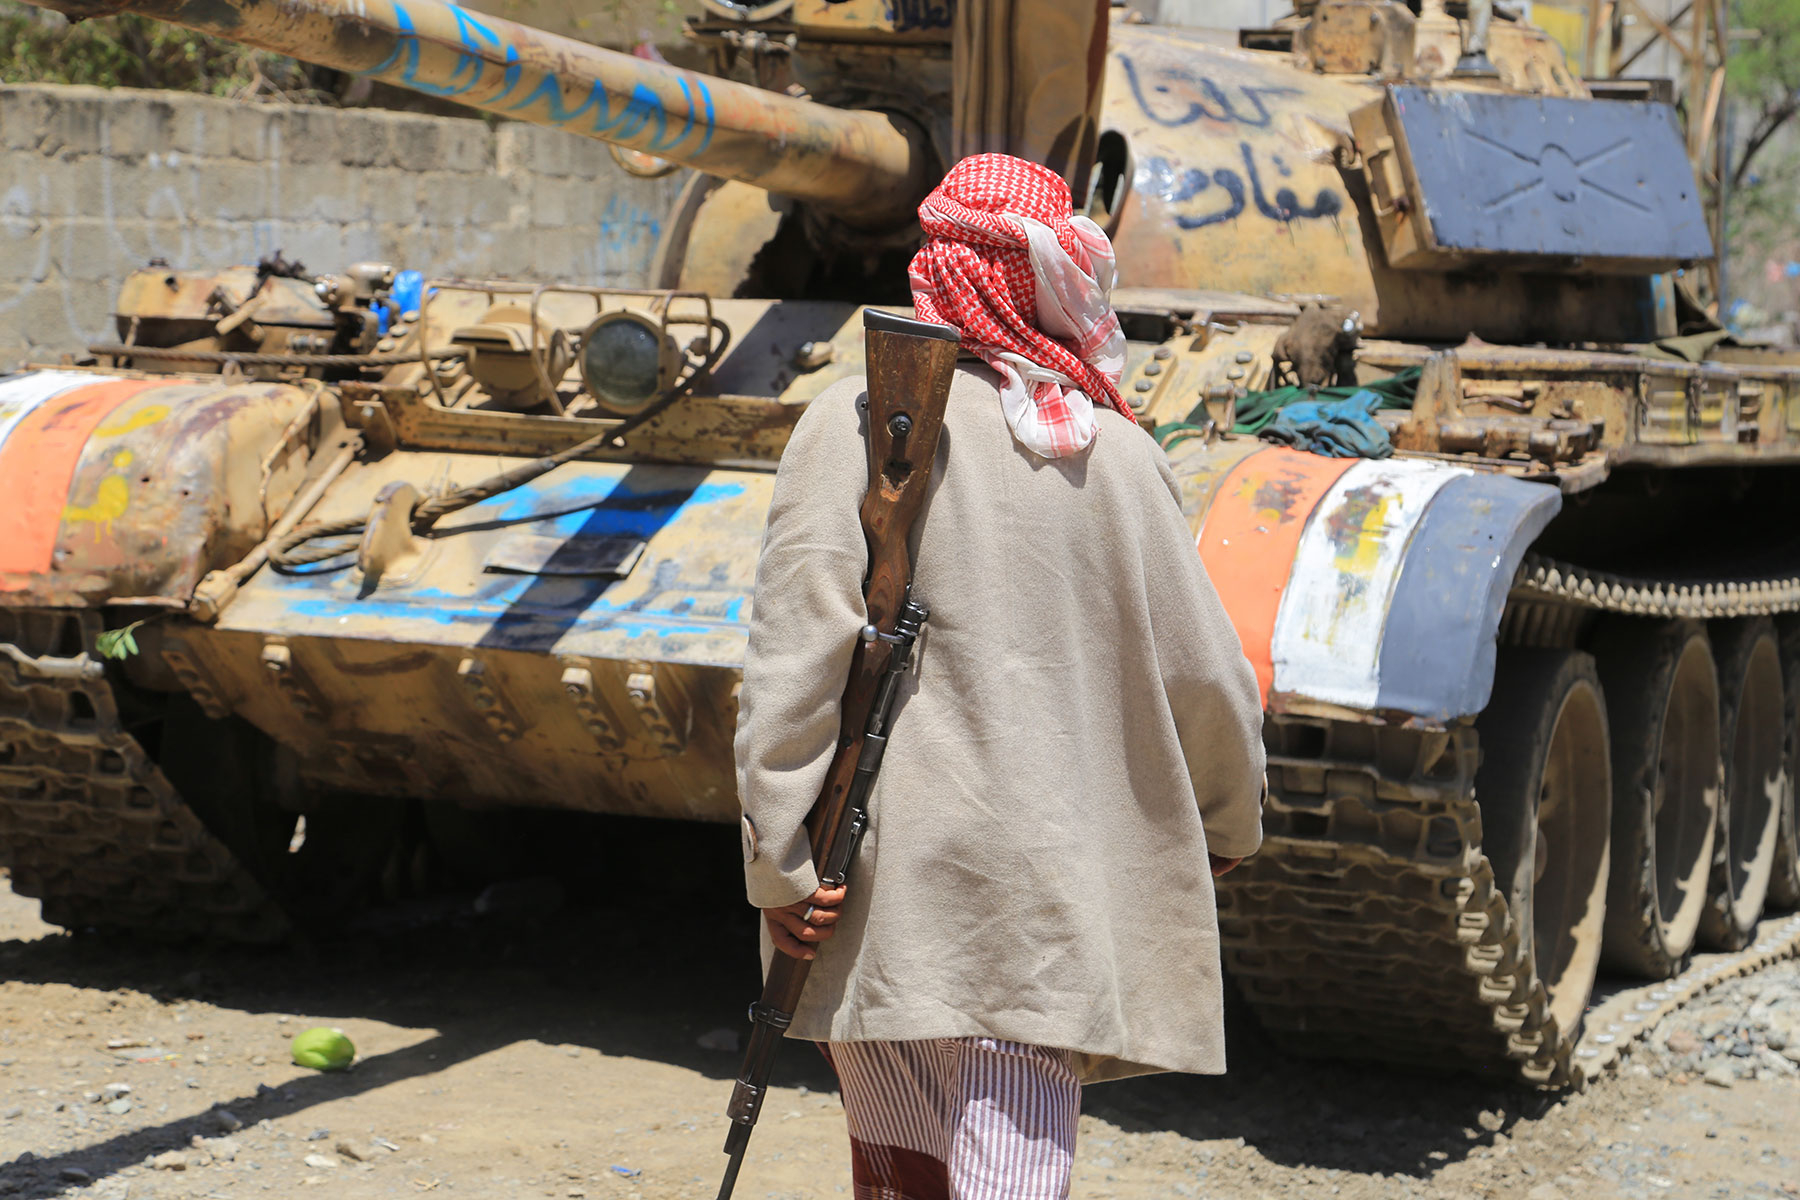 Οι δυνάμεις ασφαλείας της Σαουδικής Αραβίας άνοιξαν πυρ εναντίον διαδηλωτών στη νότια Υεμένη